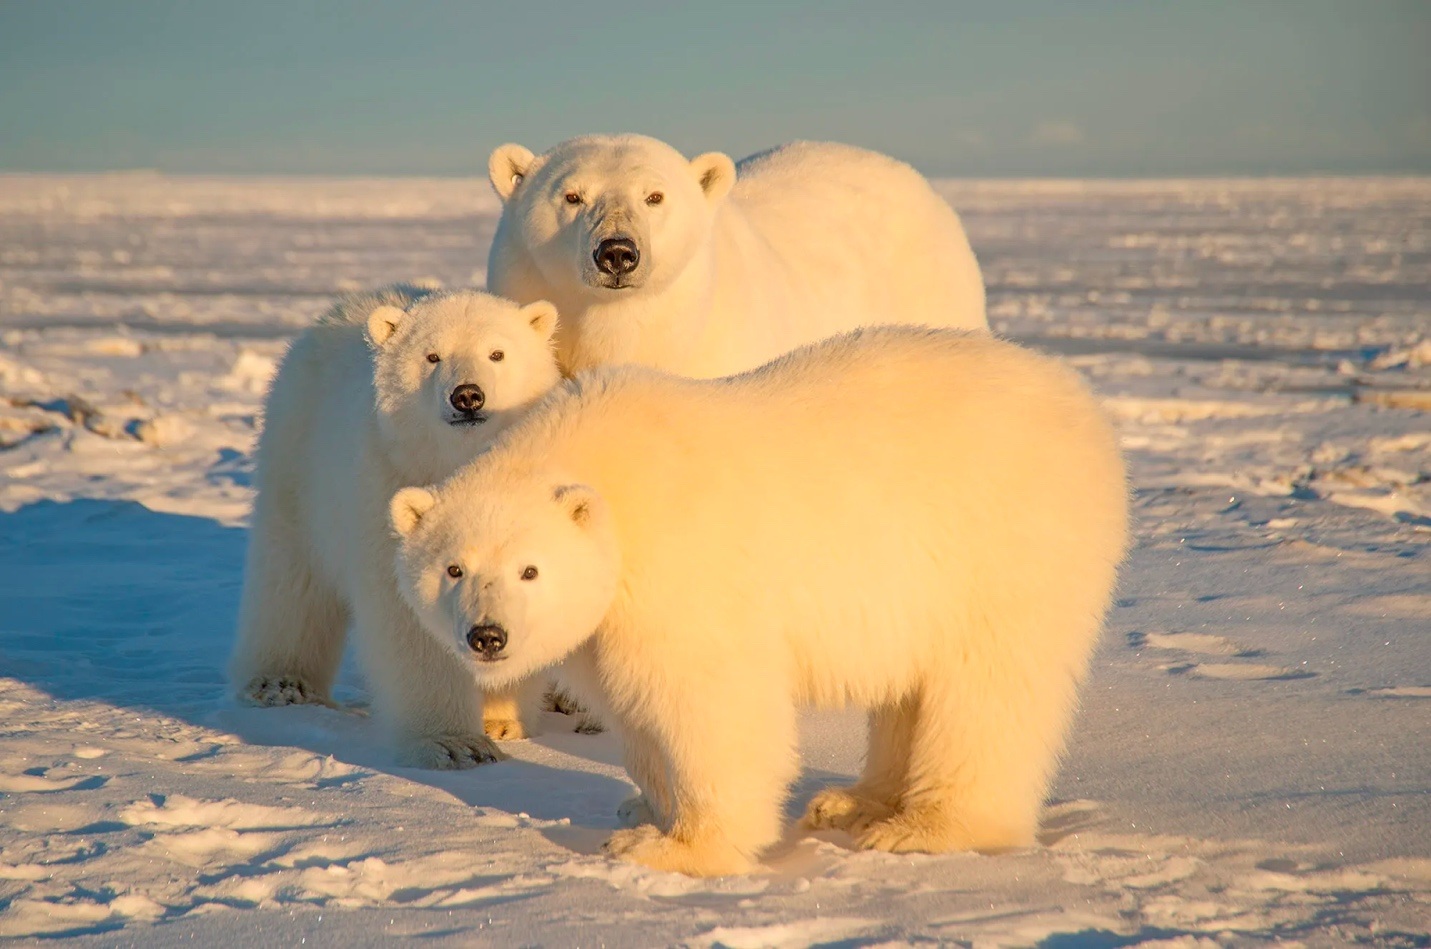 Gấu Bắc Cực: Gấu Bắc Cực – loài vật quý hiếm sống trong điều kiện khắc nghiệt nhưng vẫn có thể tạo nên vẻ đẹp đầy cuốn hút và độc đáo. Hãy thưởng thức đủ sức cuốn hút của loài vật này.